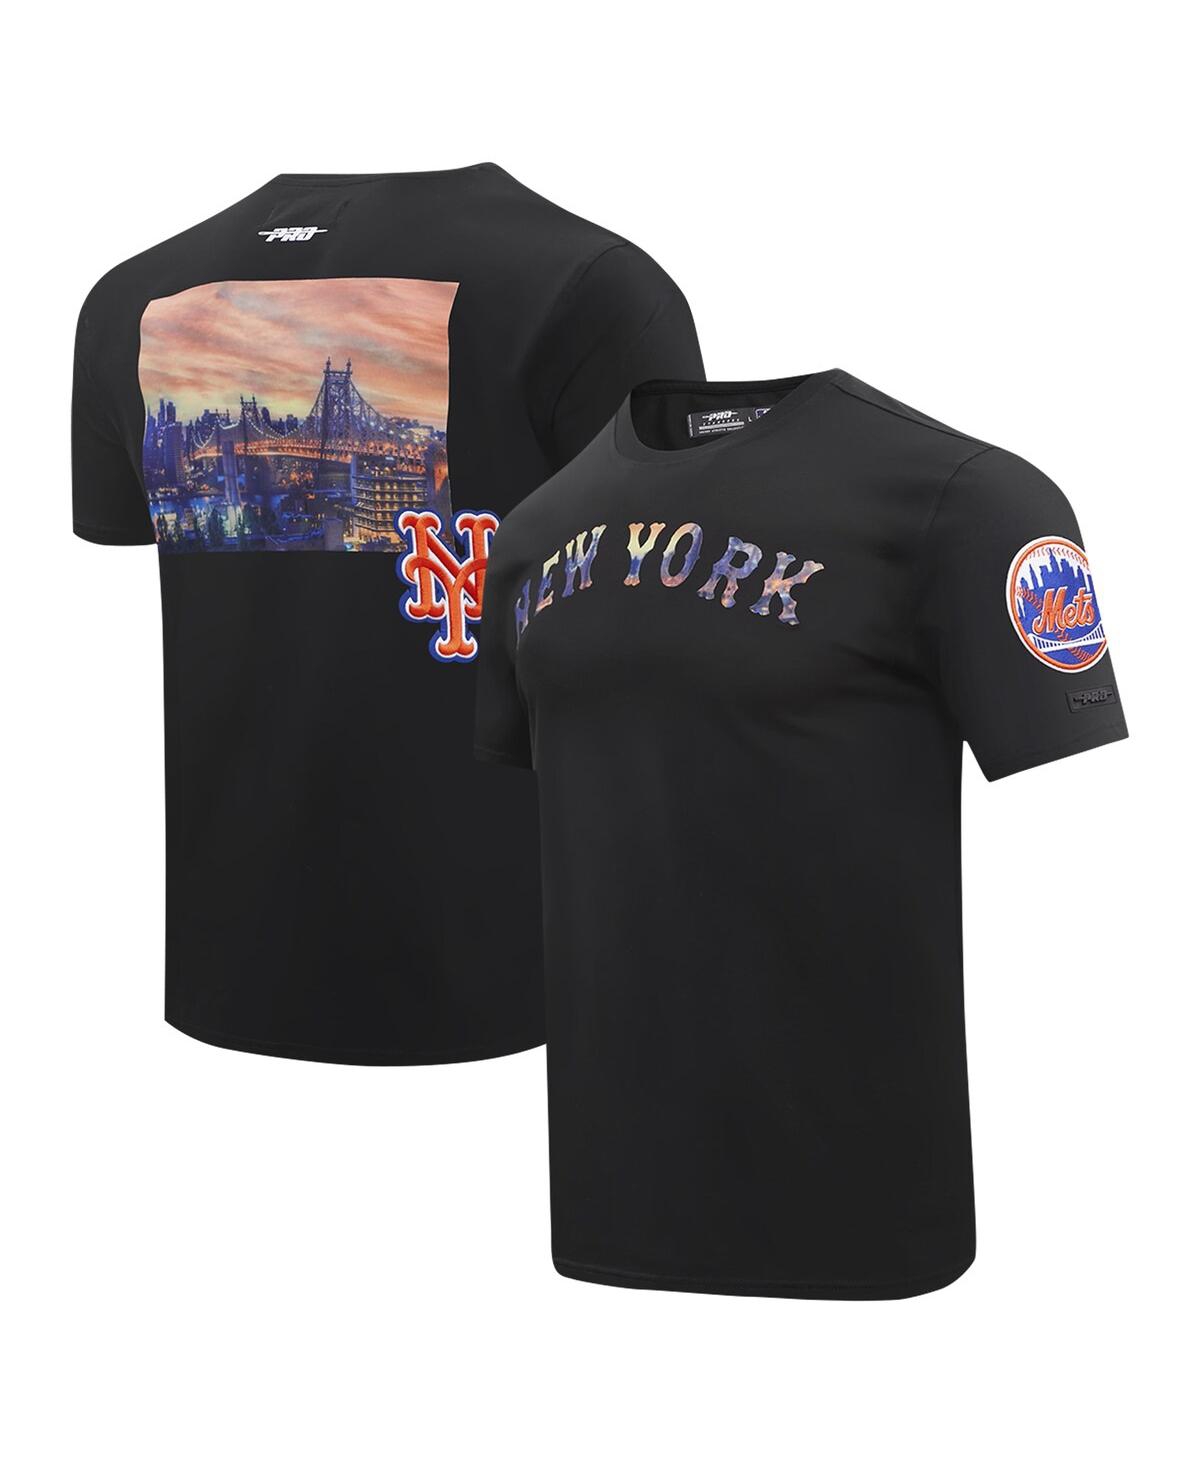 Men's Black New York Mets Cityscape T-Shirt - Black